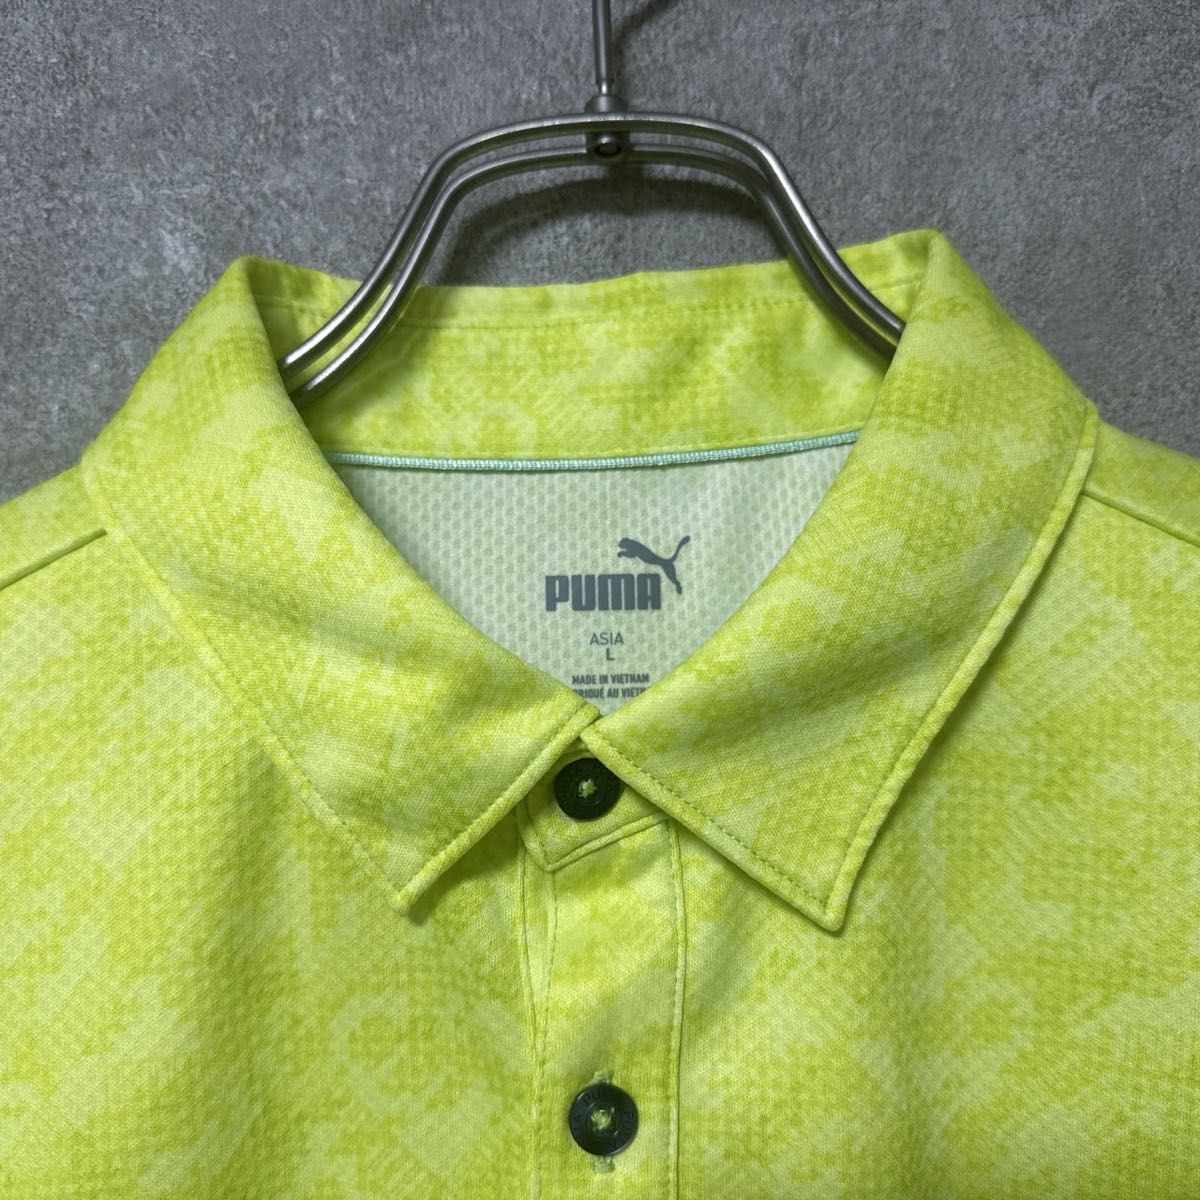 PUMA プーマ ゴルフ 総柄 半袖 ポロシャツ メンズ ウェア L シャツ 人気 デザイン 派手 襟付き スポーツ ロゴ